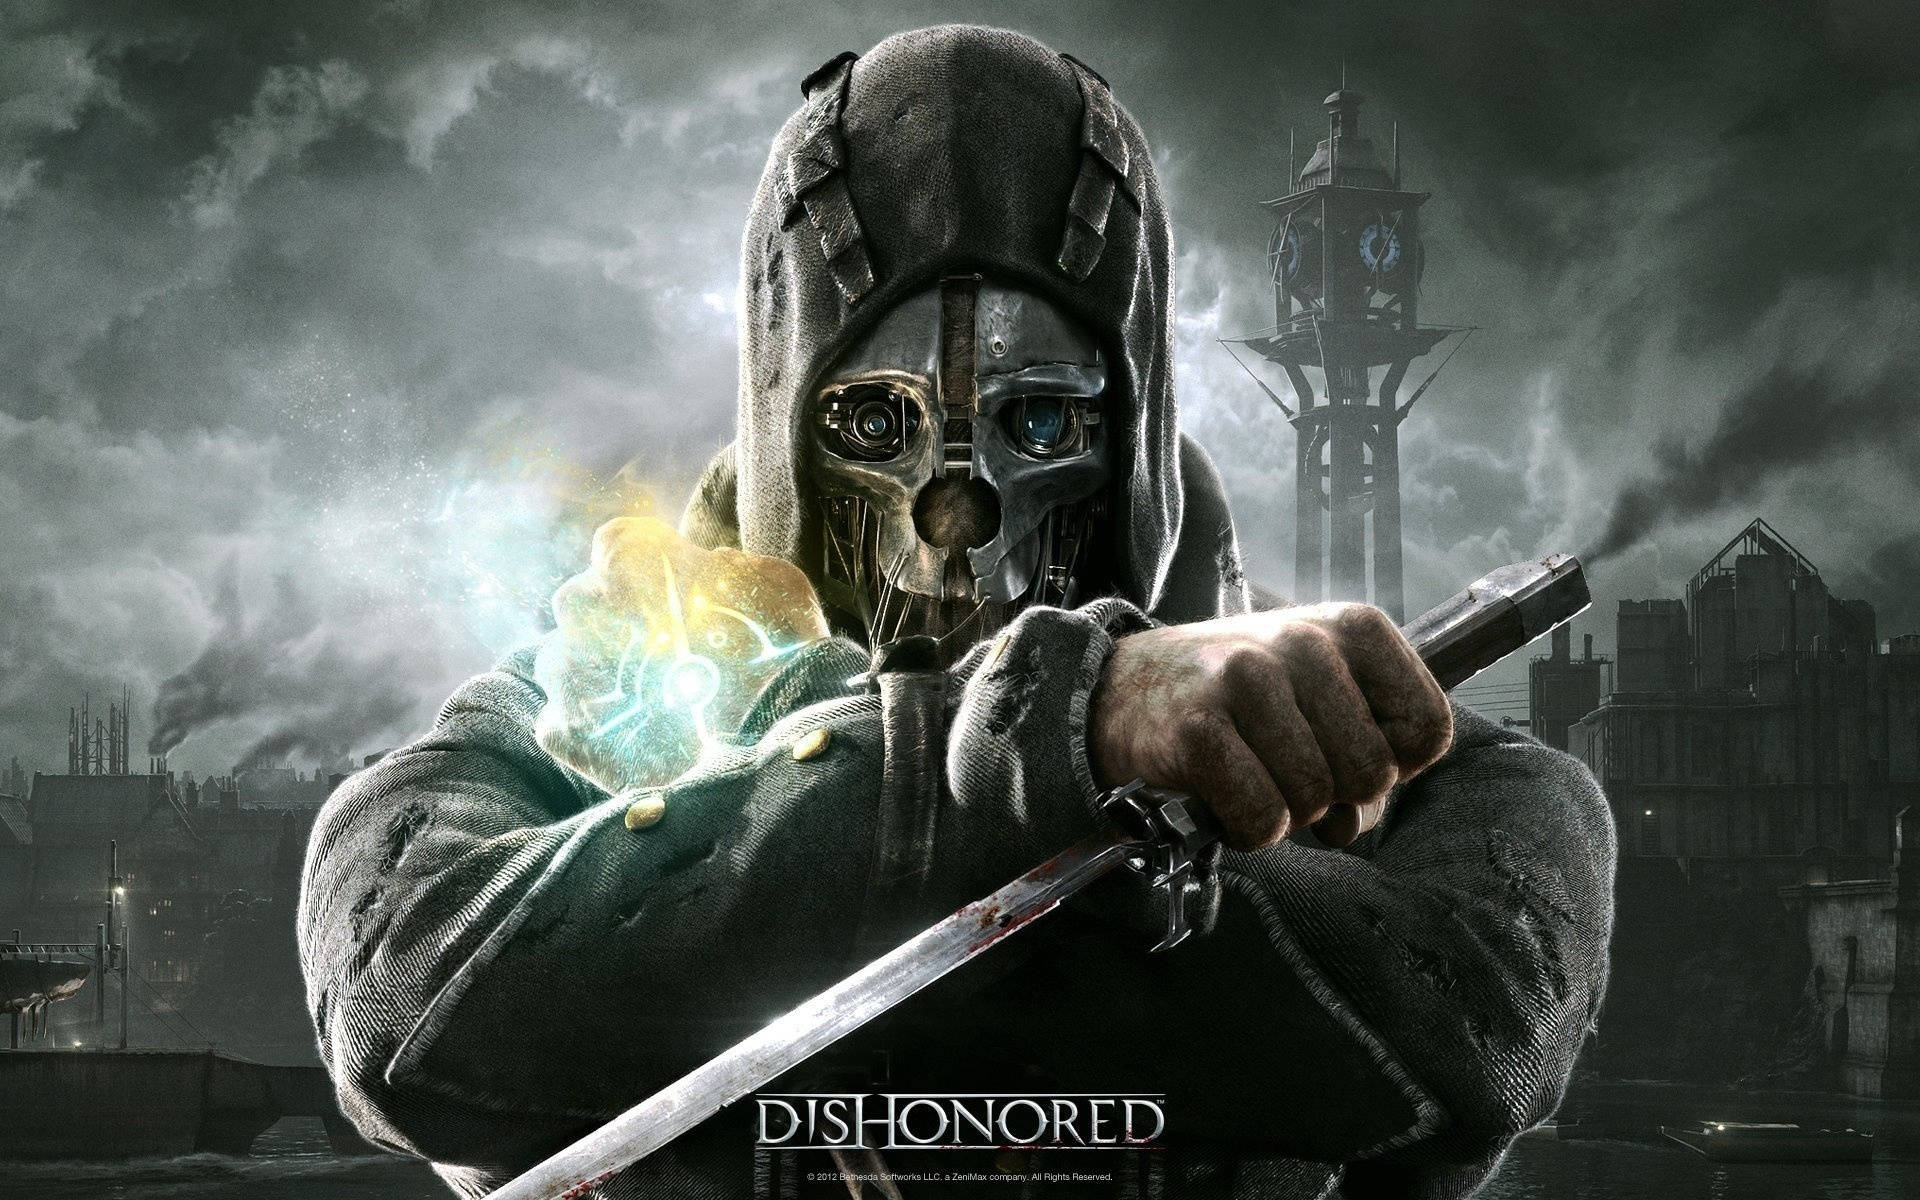 Tapet: Se det dybe, mystiske verdenssyn af Dishonored, den prestigefyldte videospilserie af Arkane Studios. Wallpaper